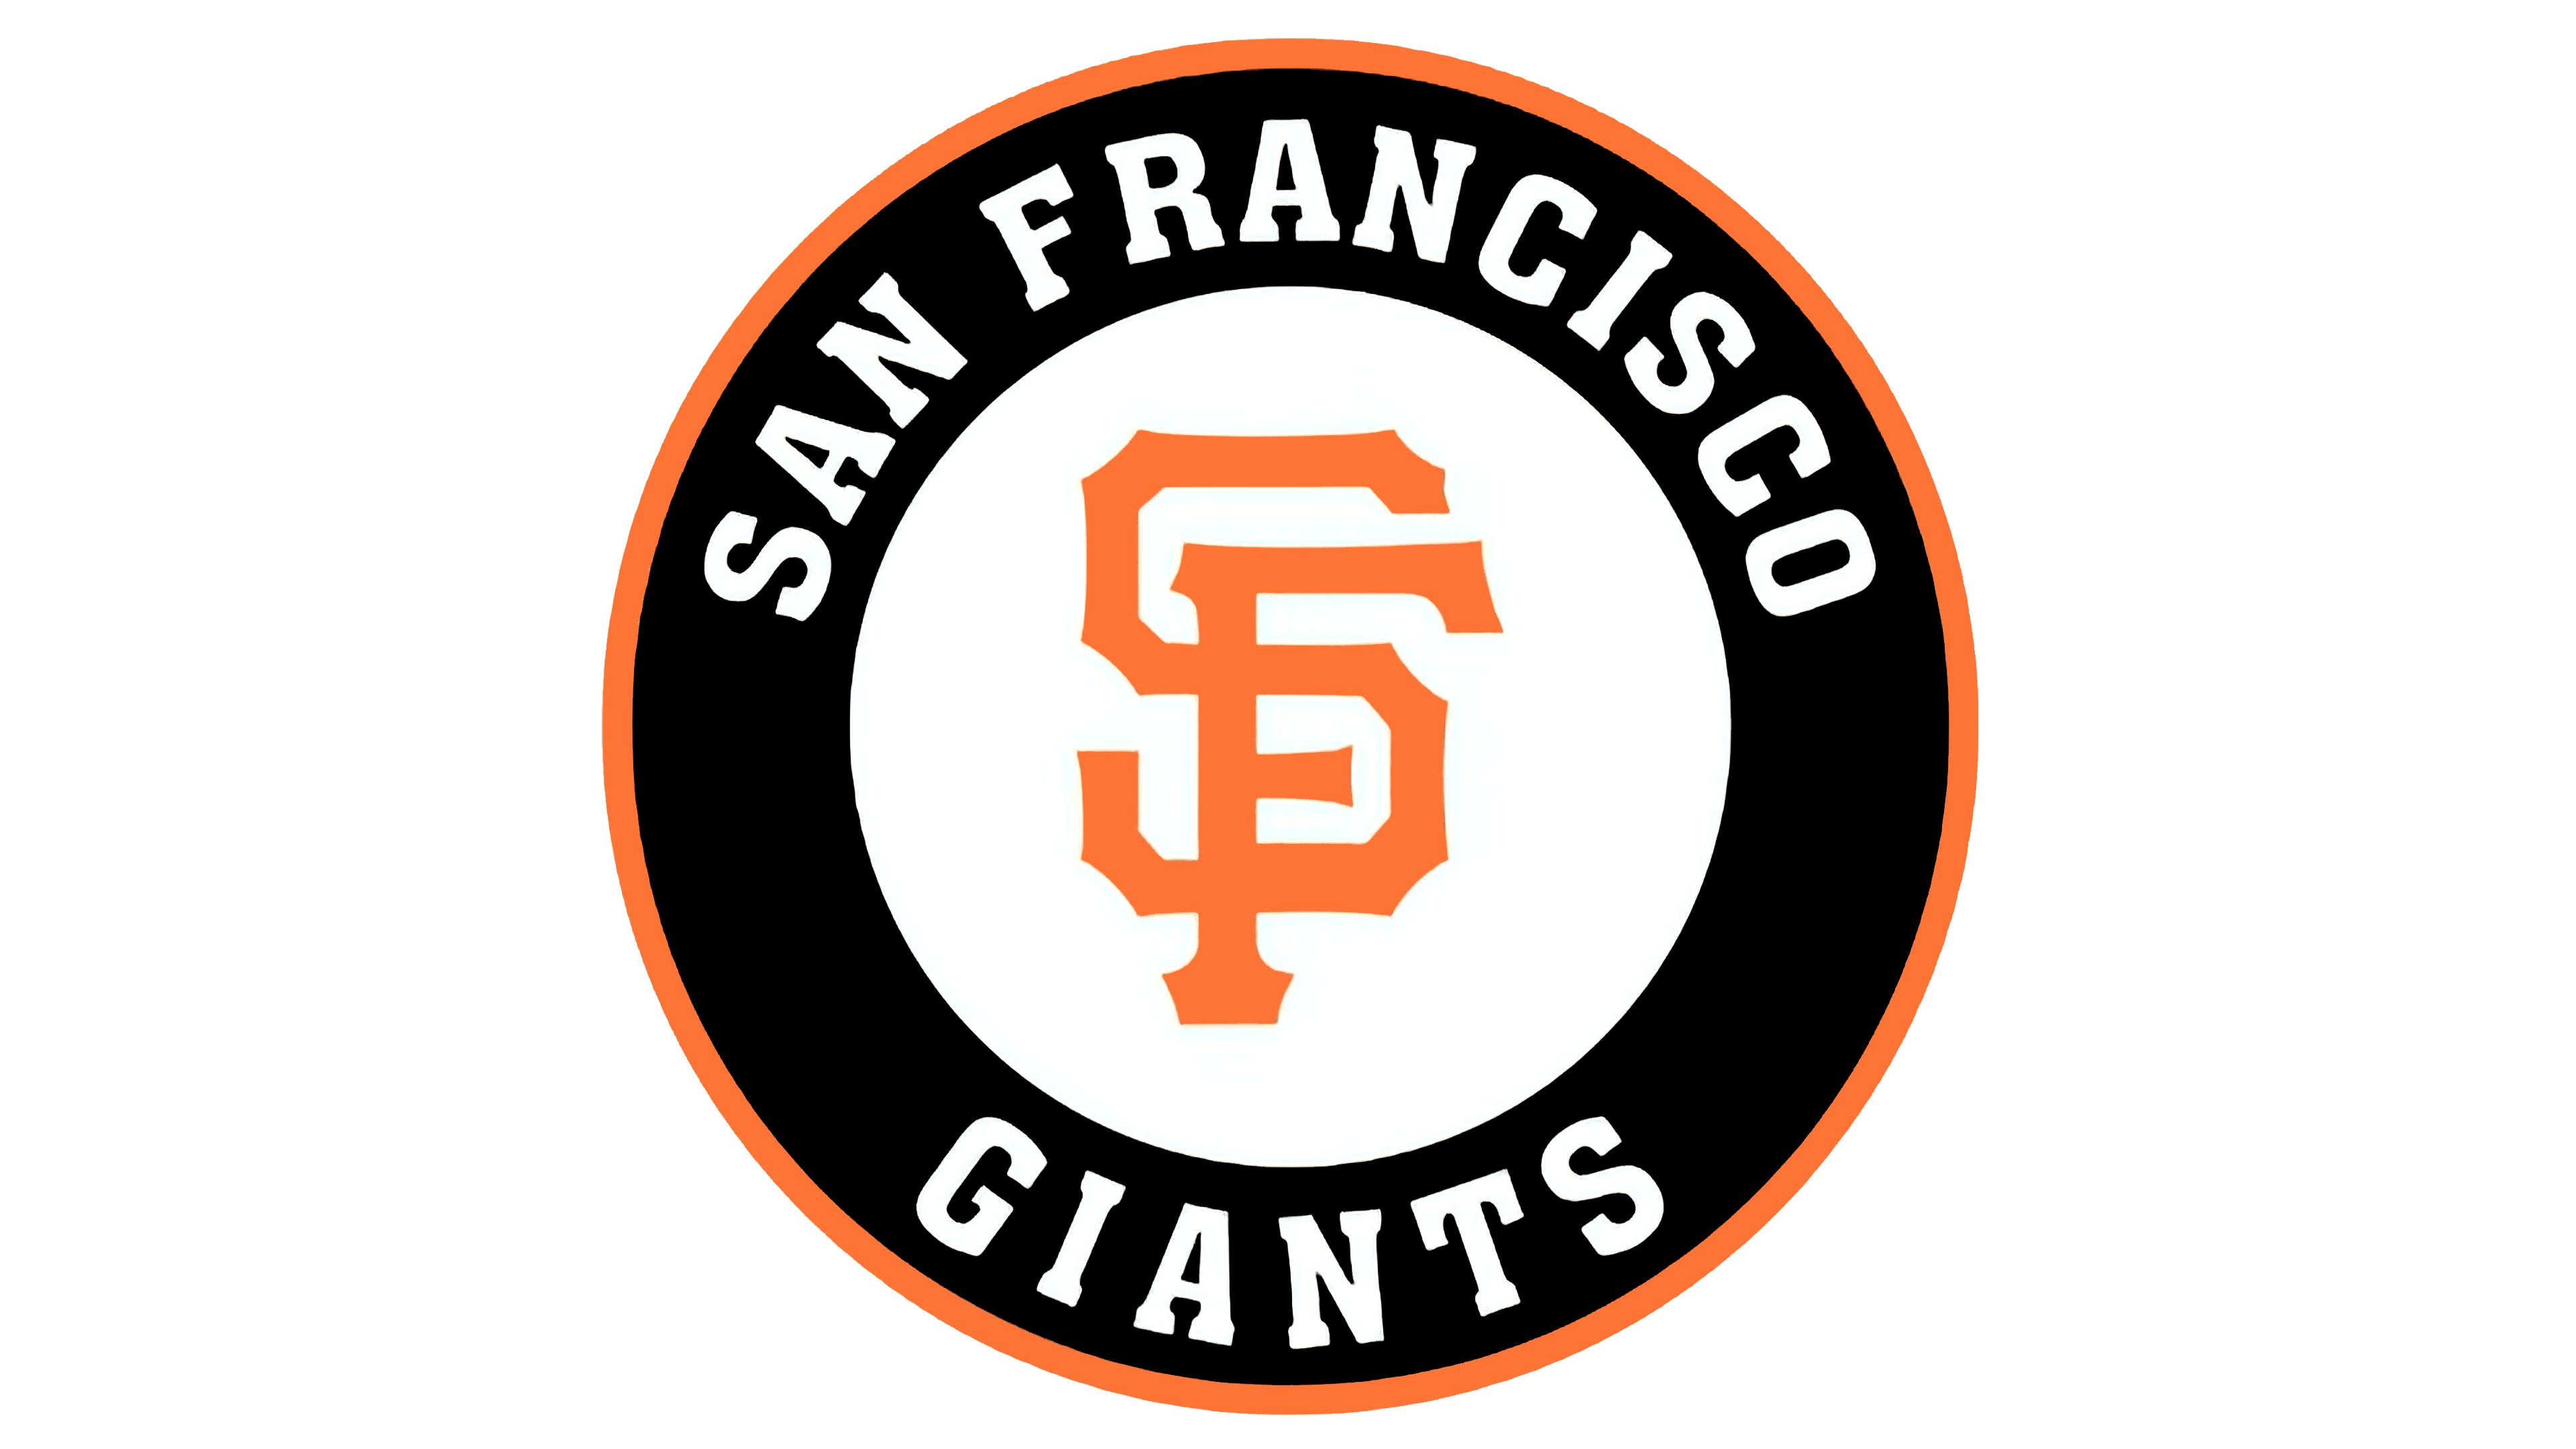 El emblema de los Gigantes de San Francisco tiene varios tipos de inscripci...